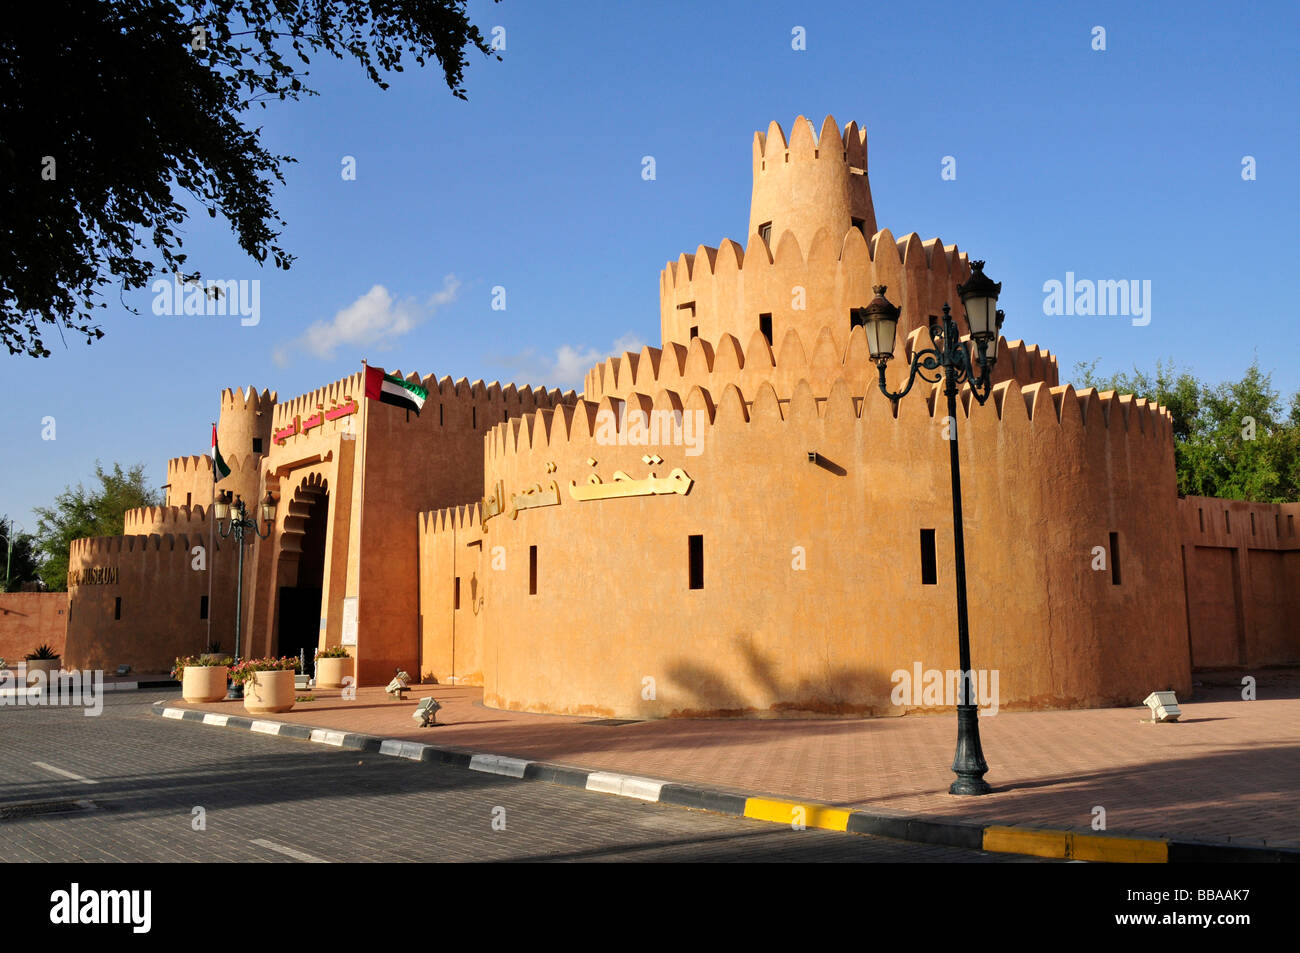 Entrée du musée du palais d'Al Ain, Al Ain, Abou Dhabi, Émirats arabes unis, l'Arabie, l'Orient, Moyen-Orient Banque D'Images